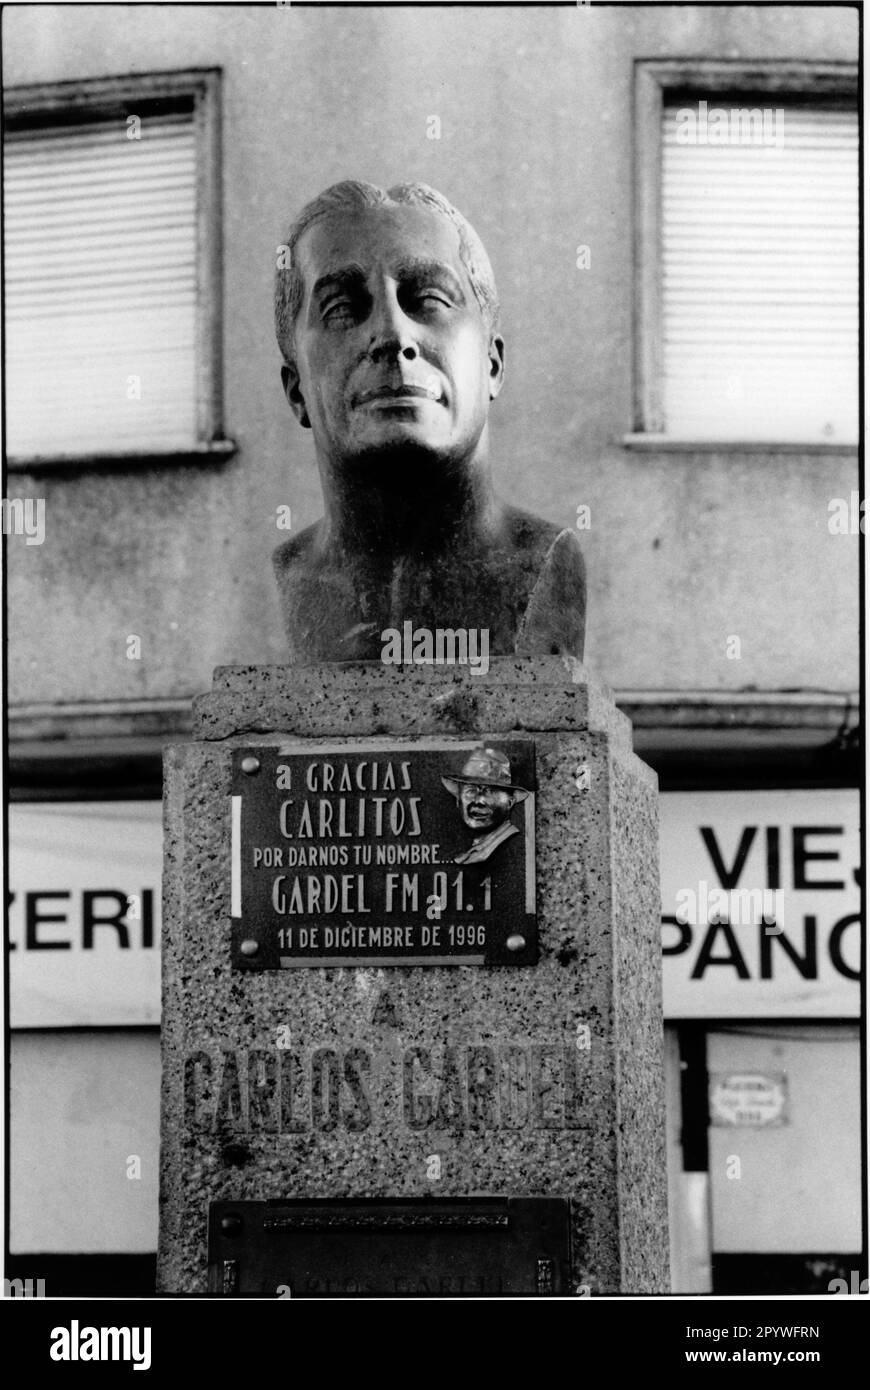 Carlos Gardel (appelé El Zorzal Criollo), français – argent. Danseur (interprète de tango), 12.12.1890 (Toulouse) –24.6.1935 (accident d'avion en Colombie). Monument à Carlos Gardel à Montevideo (Uruguay). Noir et blanc. Photo, 1997. Banque D'Images